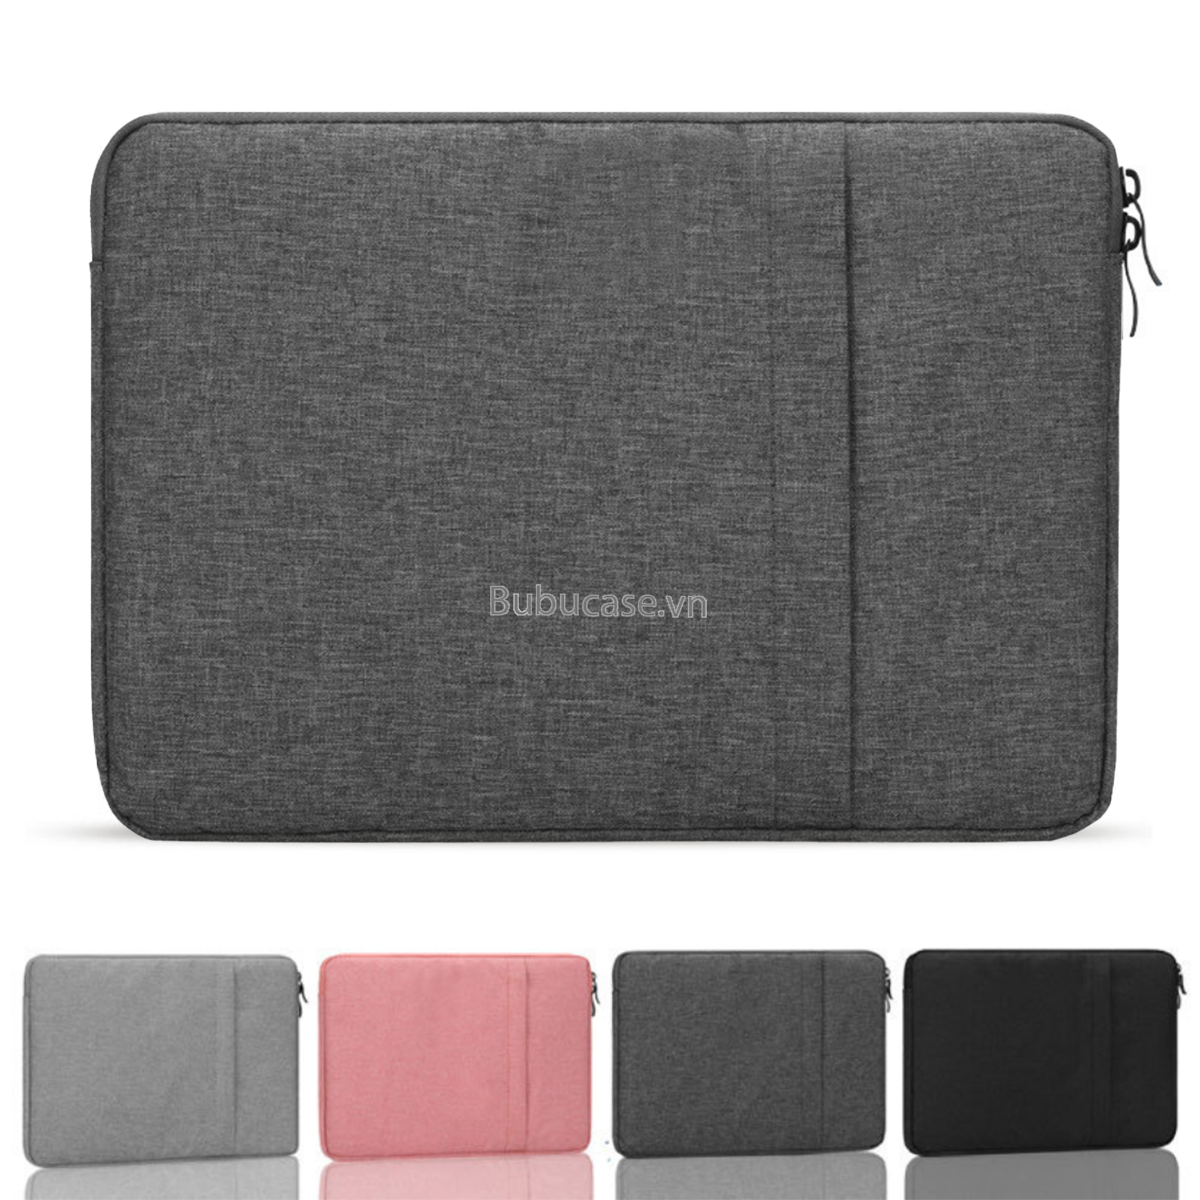 Túi Laptop 2 Dây Kéo Vải Agni Cloth Chống Thấm Đựng Laptop / Macbook 13 inch, 14 inch, 15 inch, 15.6 inch cao cấp - Bảo vệ chống va chạm, Chống thấm nước - Hàng chính hãng